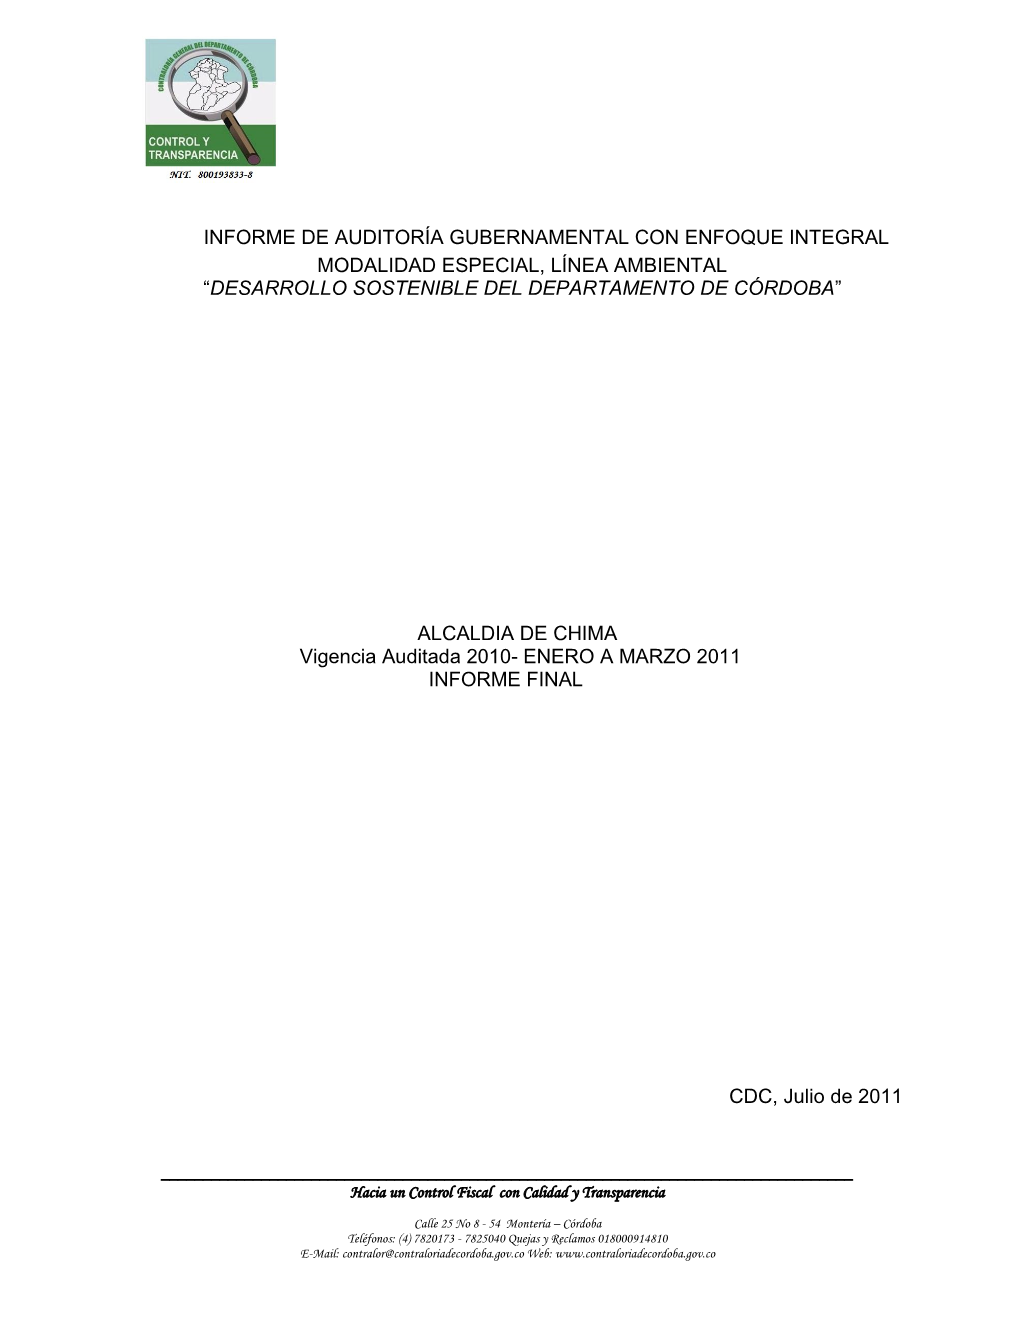 Informe De Auditoría Gubernamental Con Enfoque Integral Modalidad Especial, Línea Ambiental “Desarrollo Sostenible Del Departamento De Córdoba”